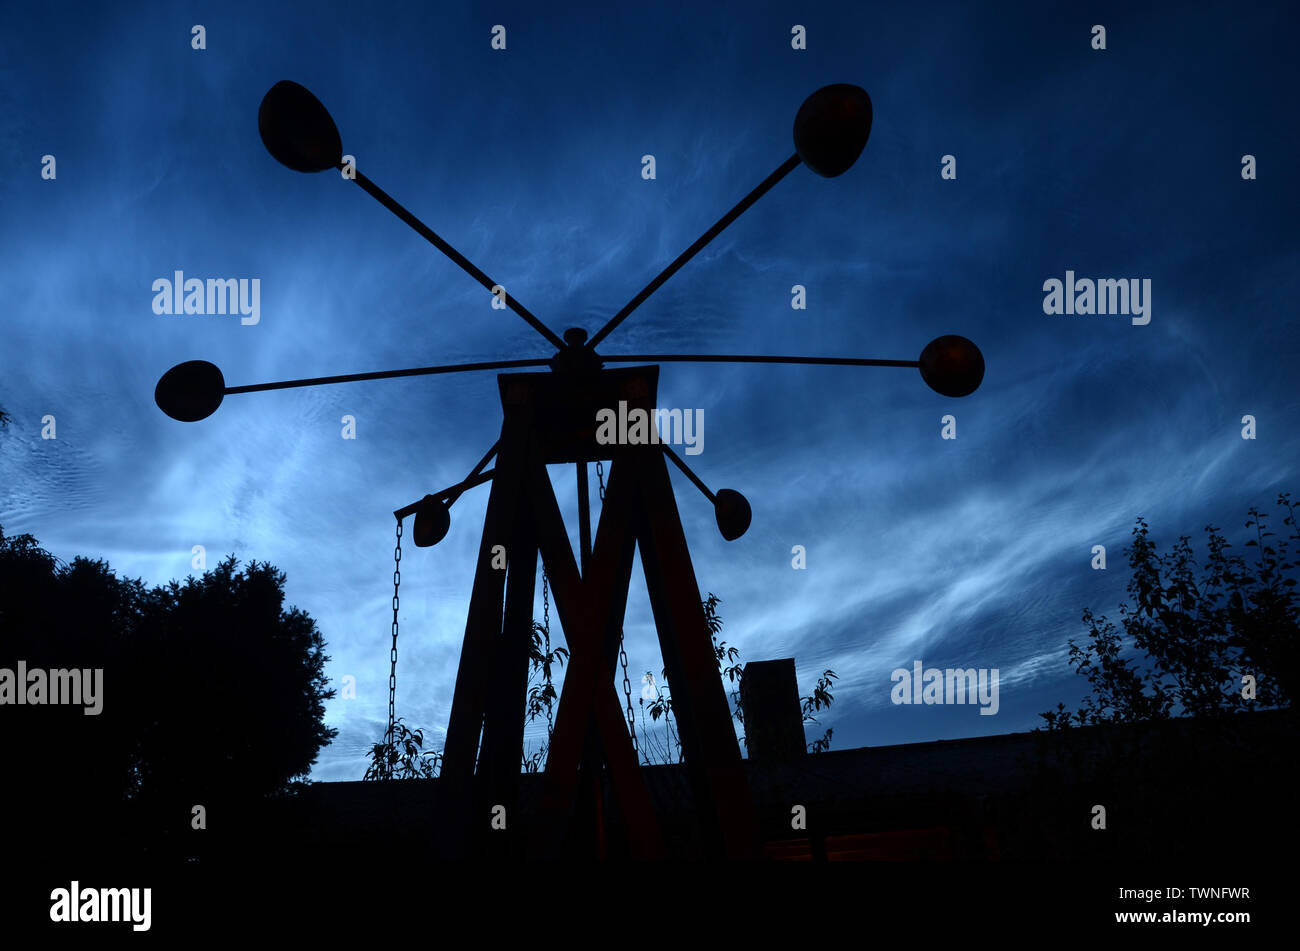 Nuit bleu acier avec noctiliucent les nuages, et la silhouette d'un moulin au premier plan. savonius Banque D'Images